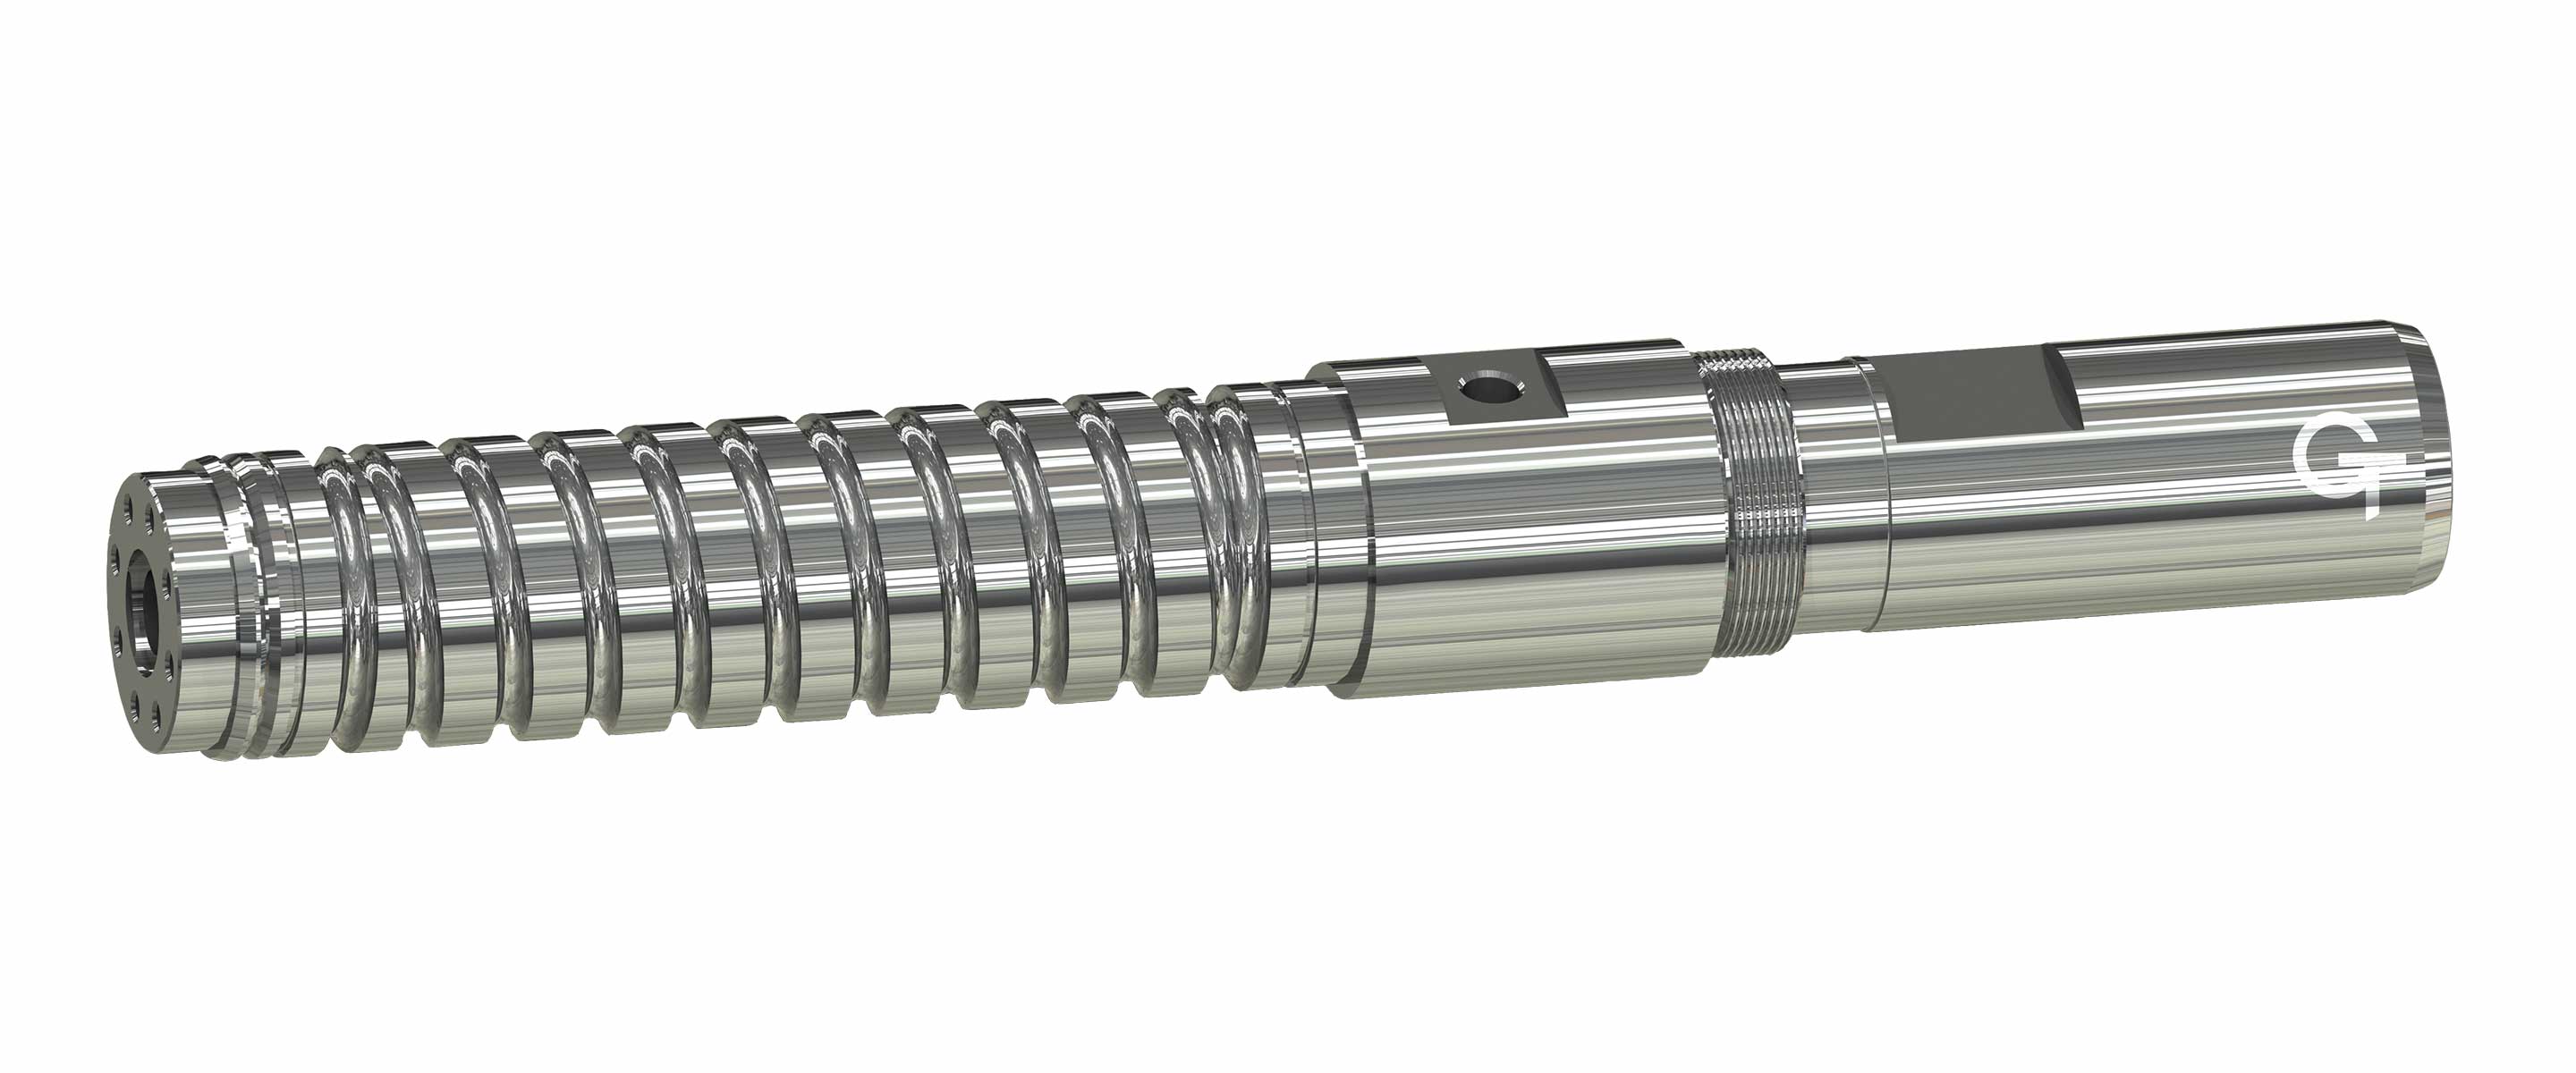 Der LSR-Zylinder wird aus Bimetall mit Kühlzone gefertigt.